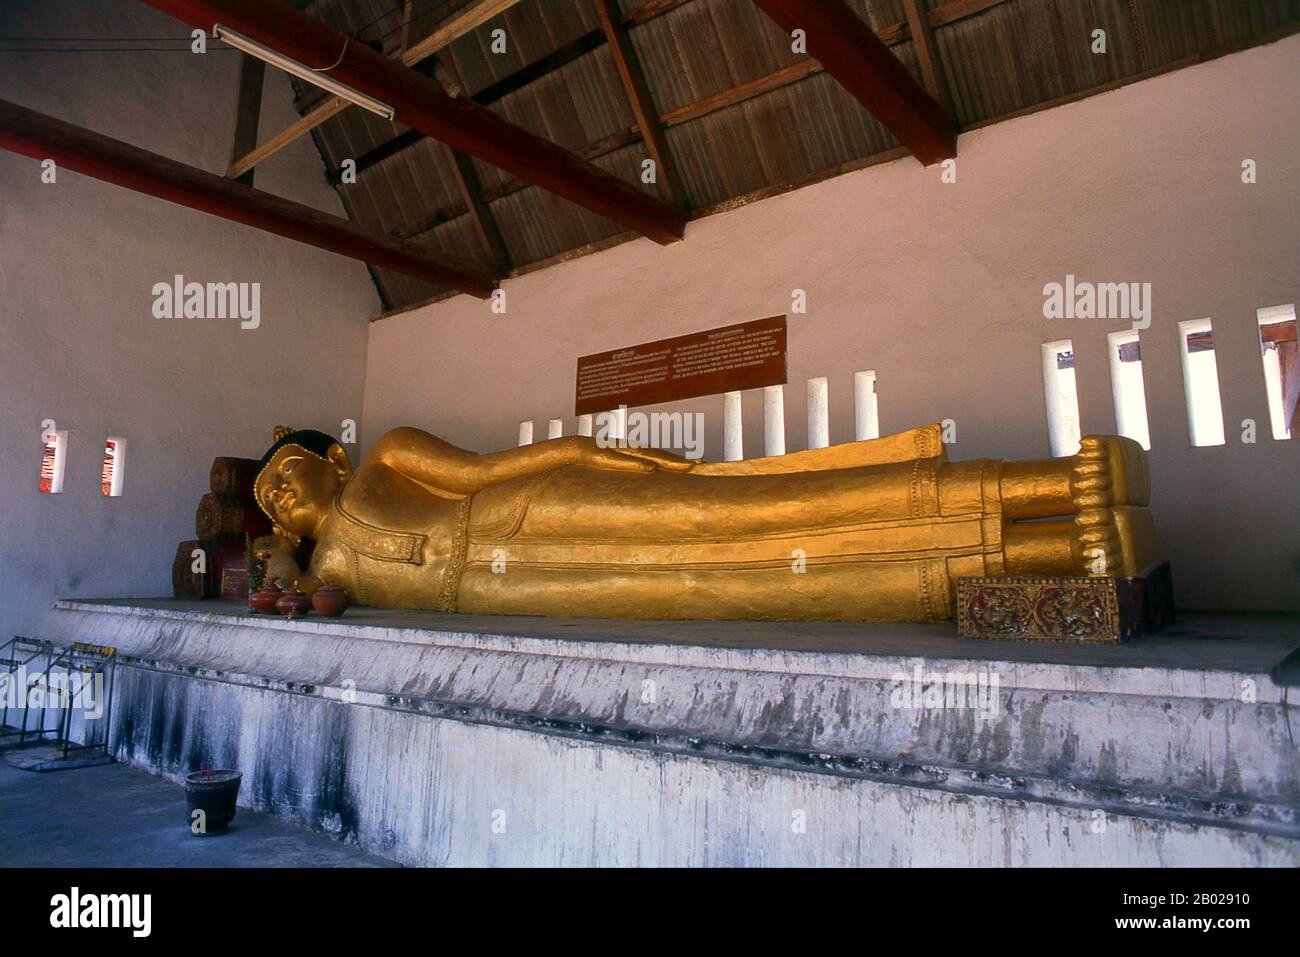 Wat Chedi Luang übersetzt wörtlich aus dem thailändischen als 'Monasterium des Großen Stupa'. Der Bau des Tempels begann Ende des 14. Jahrhunderts, als das Königreich Lan Na seinen Anfang nahm. König Saen Muang Ma (1385-1401) beabsichtigte es als Ort eines großen Reliquiars, um die Asche seines Vaters, König Ku Na (1355-85), zu verschönern. Heute ist es das Gelände der Lak Muang- oder Stadtsäule. Die jährliche Inthakin-Zeremonie findet innerhalb der Grenzen des Tempels statt. Chiang Mai (was 'neue Stadt' bedeutet), manchmal auch als 'Chiengmai' oder 'Chiangmai' geschrieben, ist die größte und kulturhistorisch bedeutsamste Stadt im Norden Stockfoto